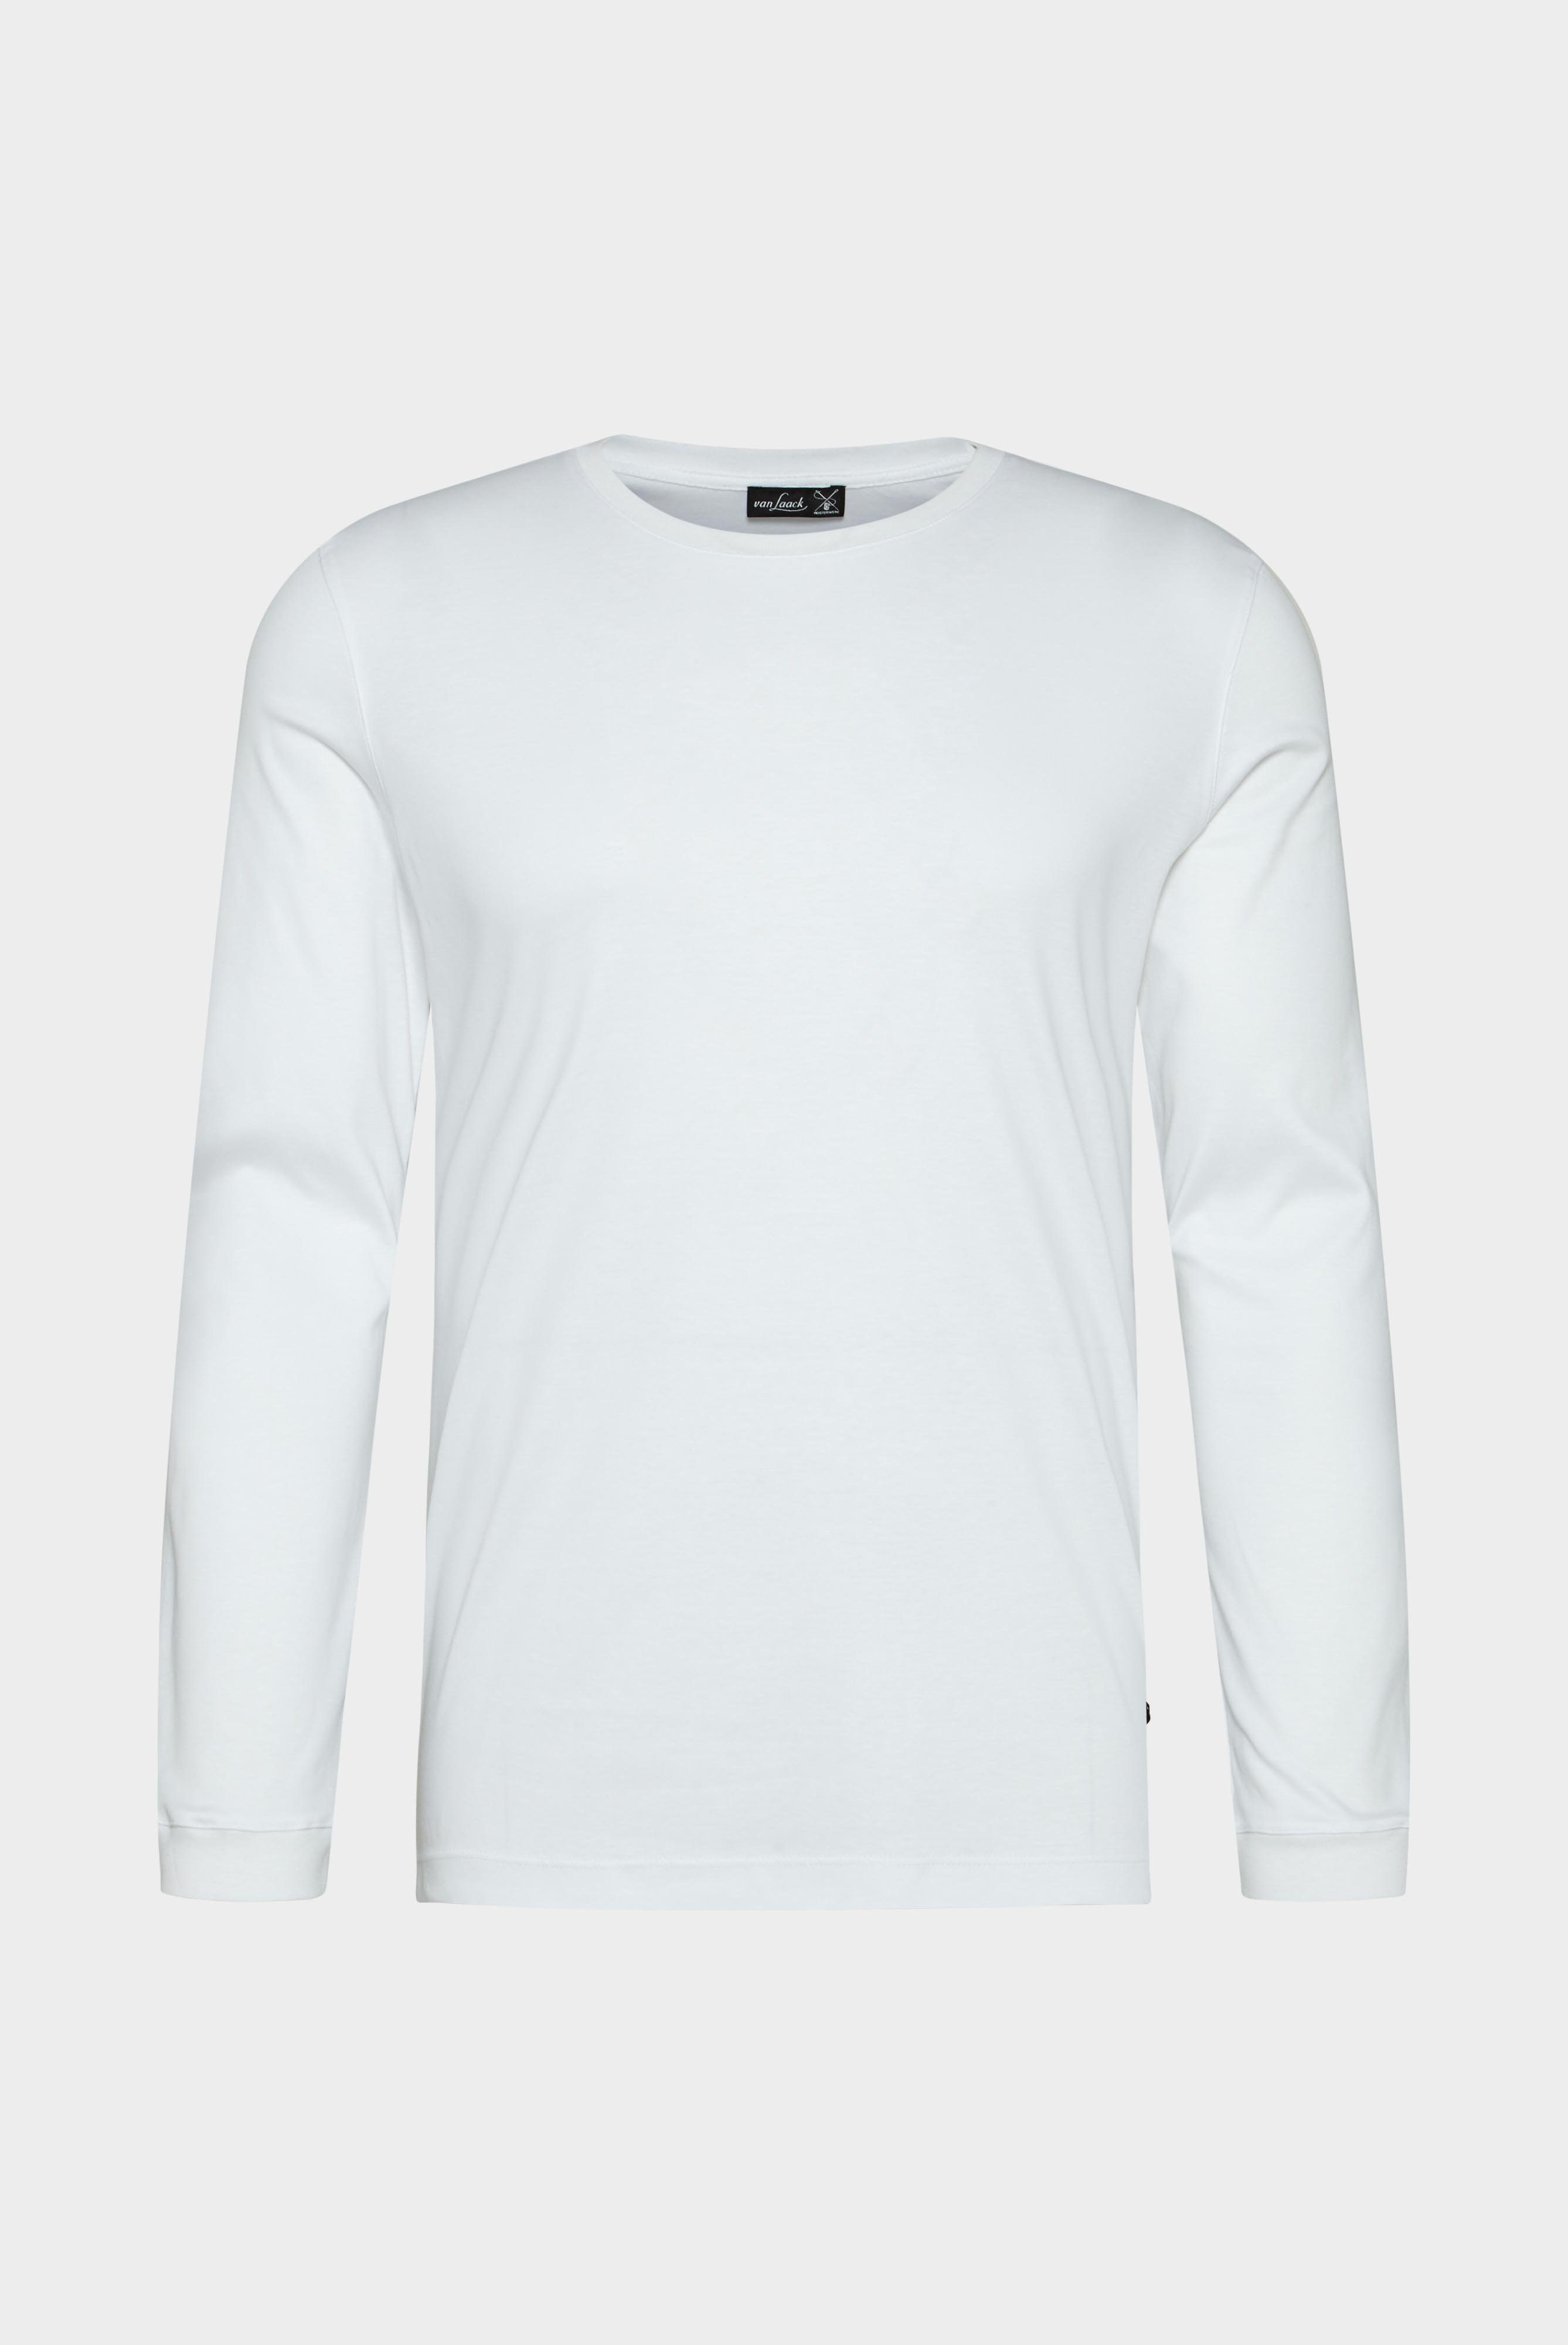 T-Shirts+Longsleeve Swiss Cotton Jersey Crew Neck T-Shirt+20.1718.UX.180031.000.XXL